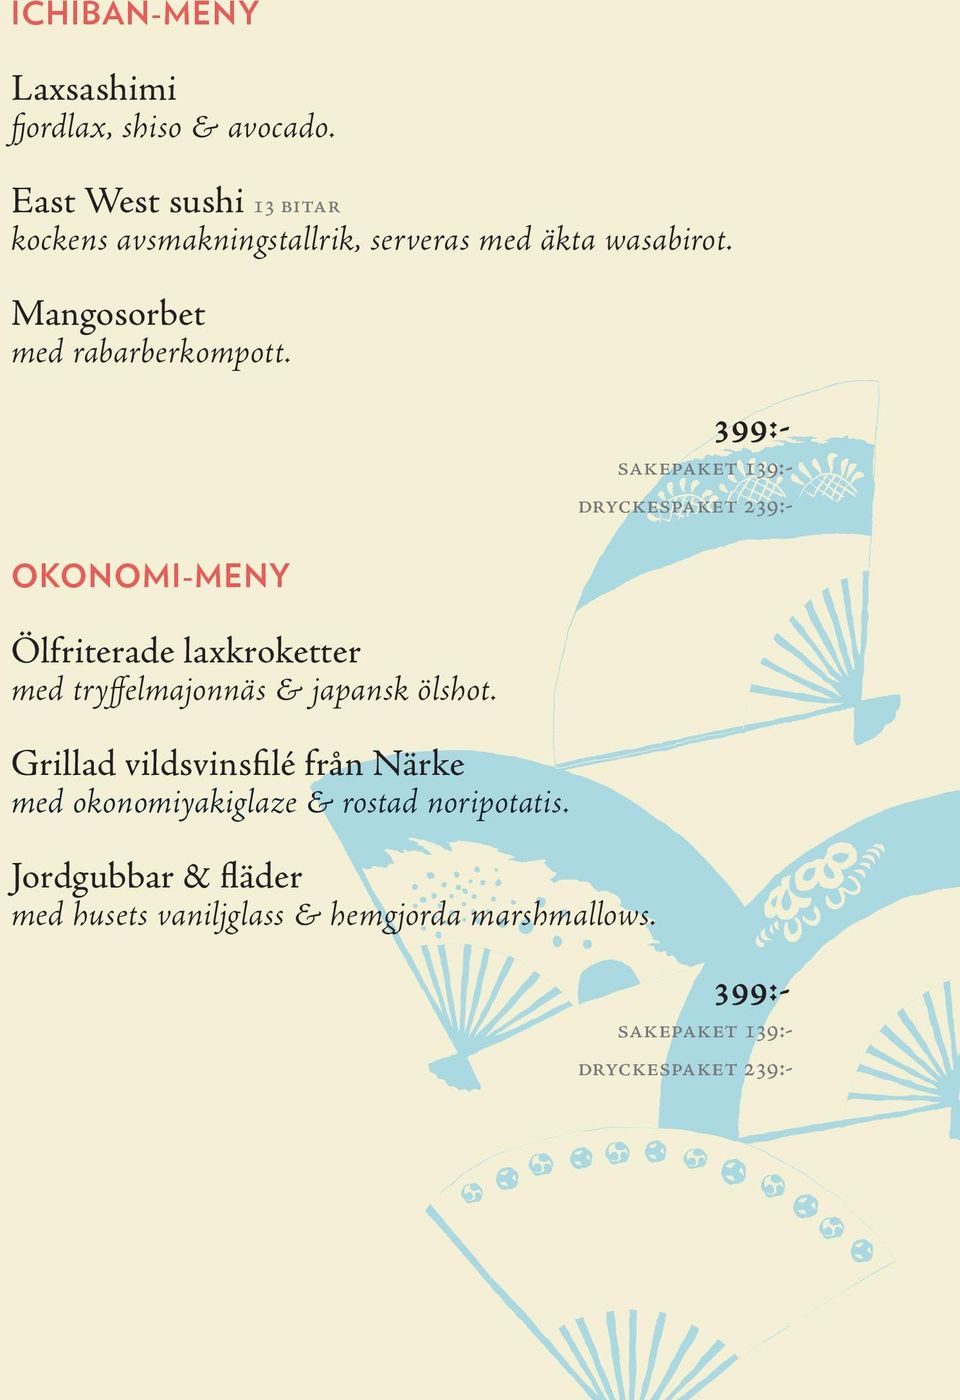 Okonomi-MENY Ölfriterade laxkroketter med tryffelmajonnäs & japansk ölshot.